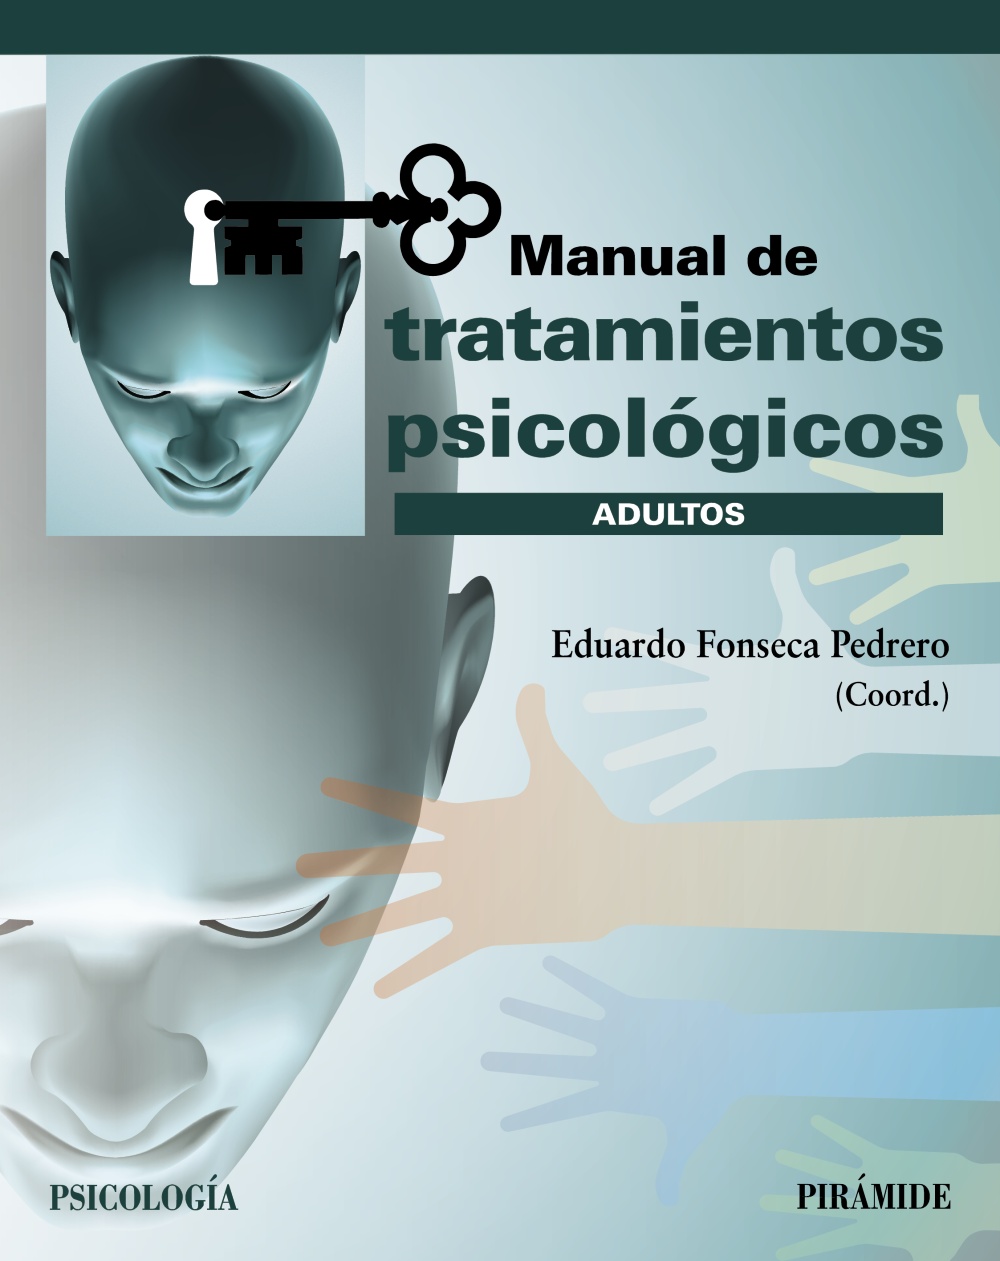 Imagen de portada del libro Manual de tratamientos psicológicos